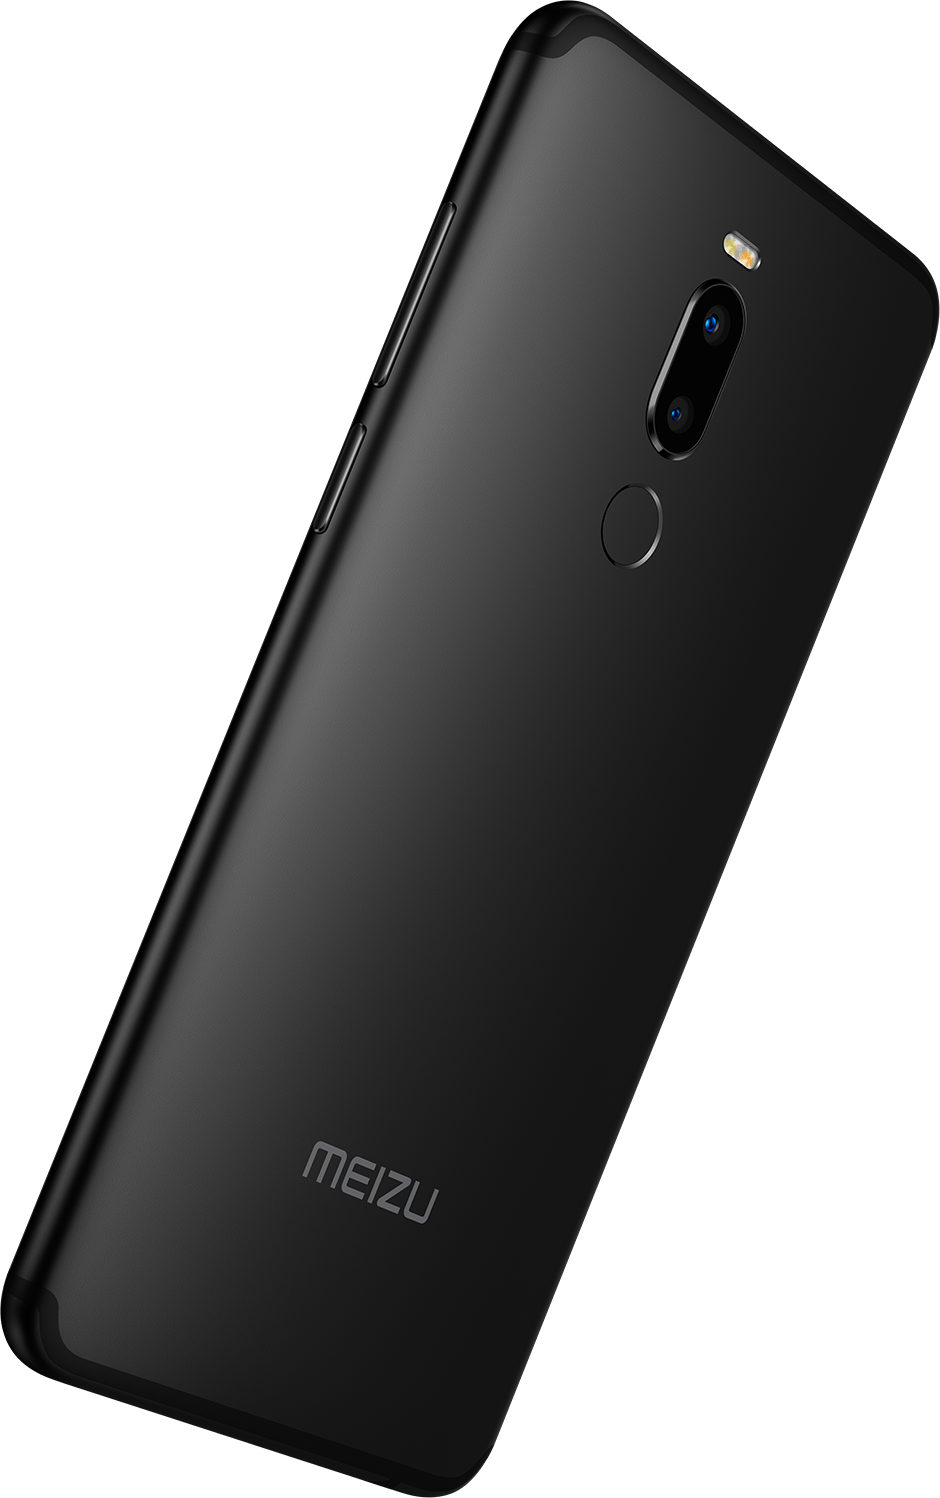 Meizu Note 8 - короткий, но максимально информативный обзор. Для большего удобства, добавлены характеристики, отзывы и видео.